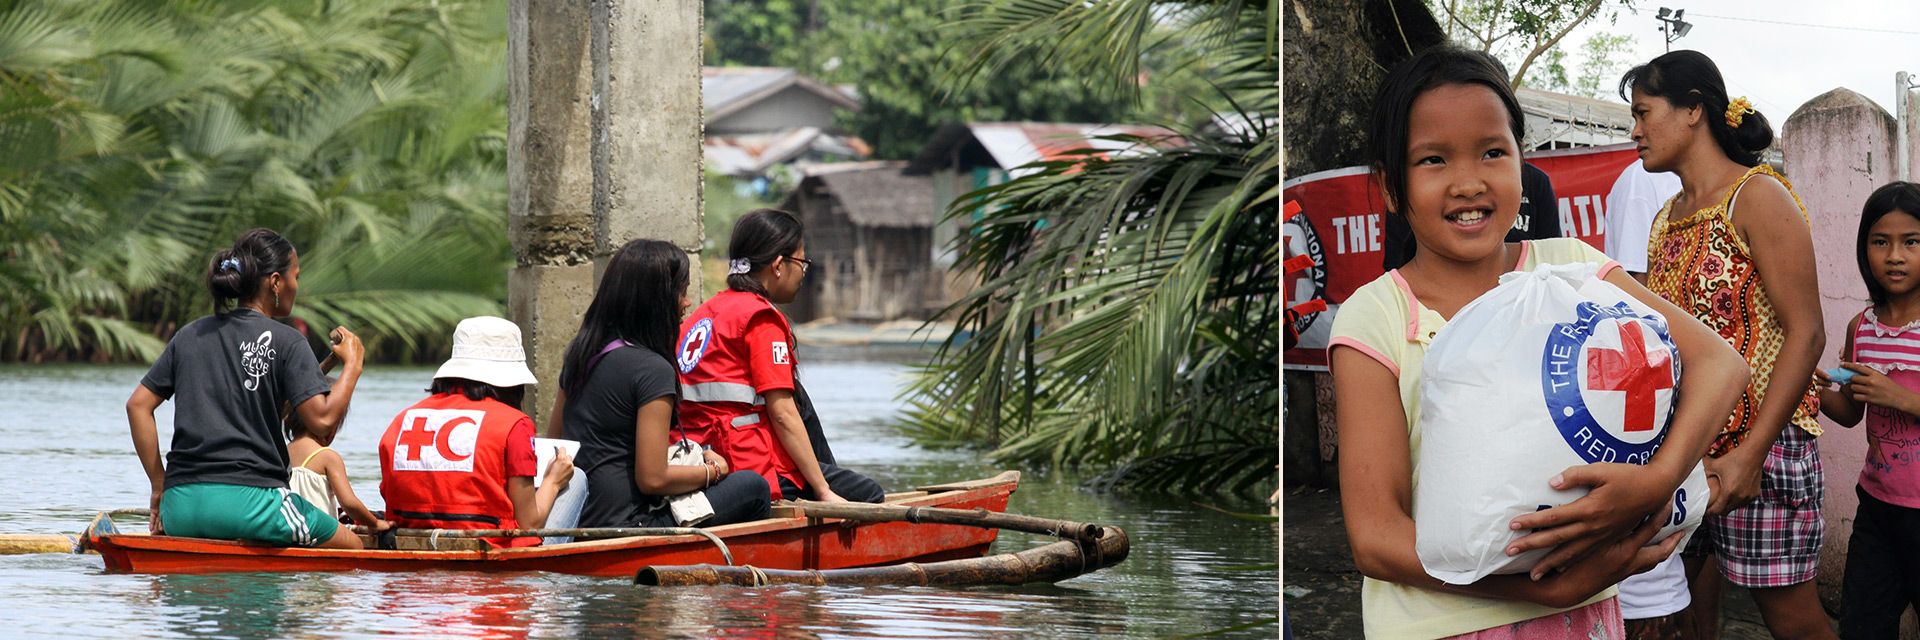 Philippinen Hilfe: Helferinnen im Boot und Kind mit Hilfsgütern